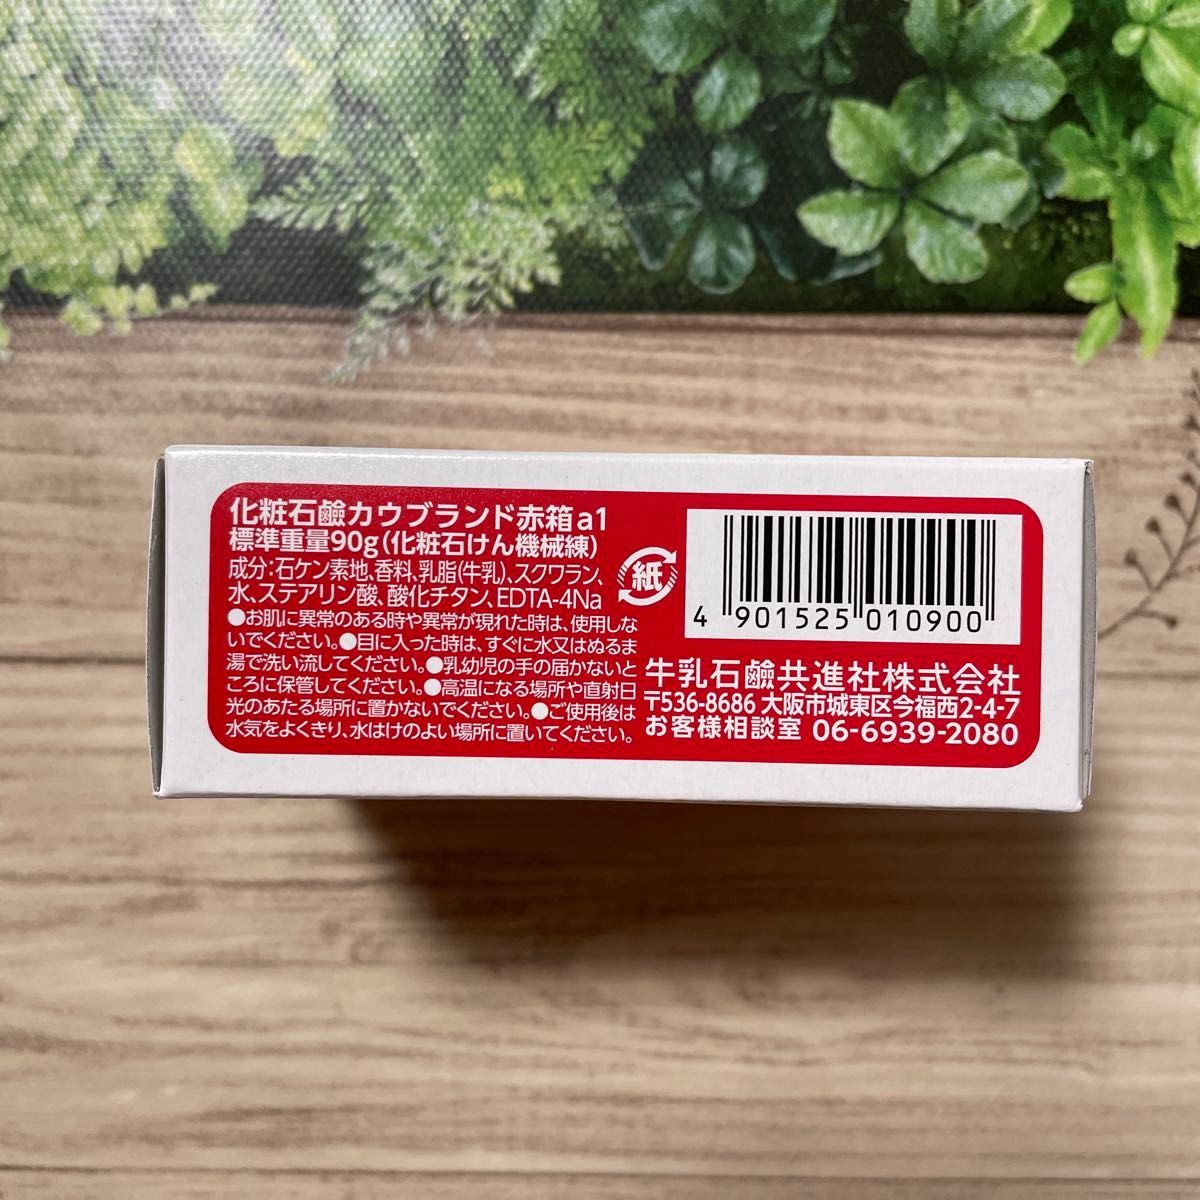 牛乳石鹸 赤箱 カウブランド 洗顔石鹸 国産 90g × 9箱セット